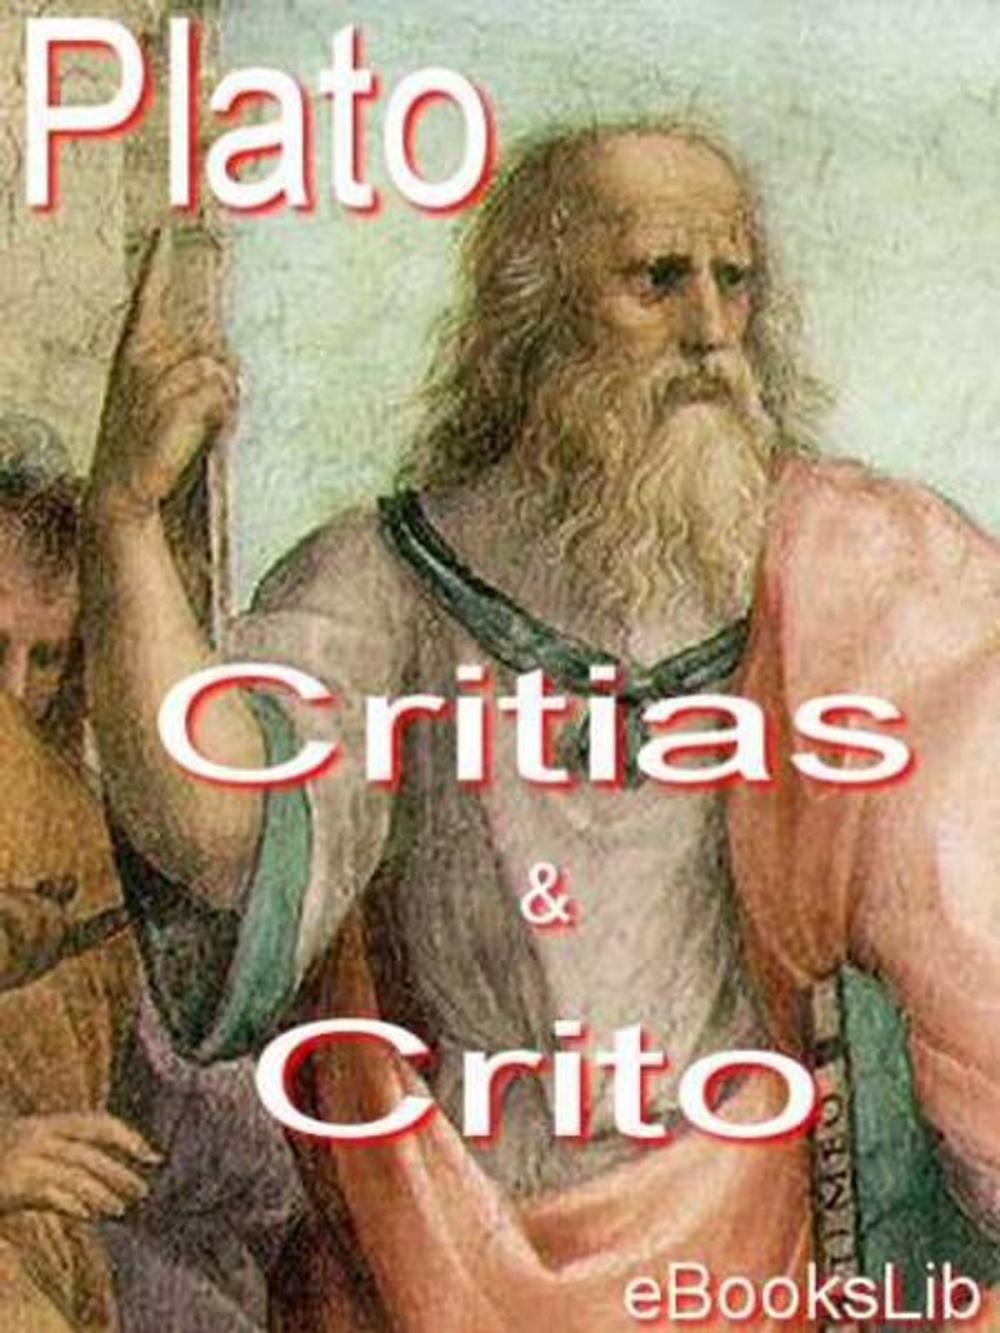 Big bigCover of Critias - Crito